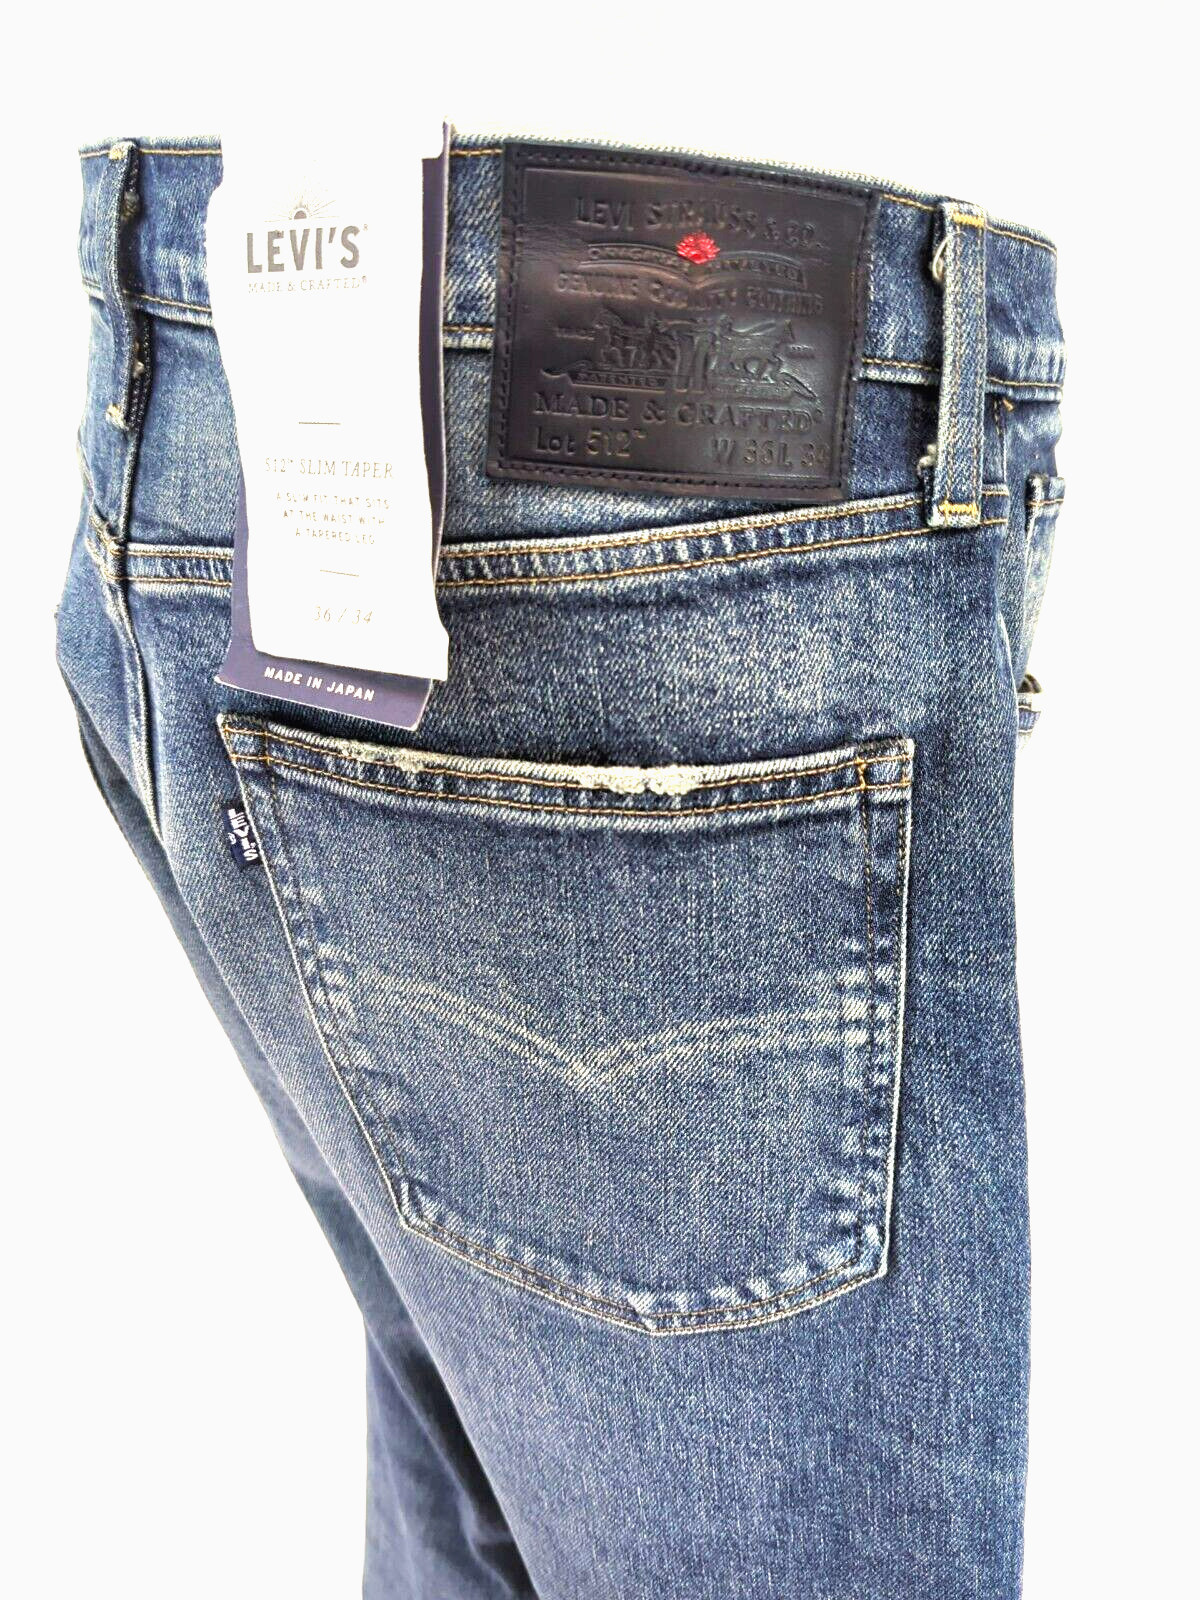 LEVI'S Made & Crafted 512 Slim Taper Jeans Rip & Repair JAPAN